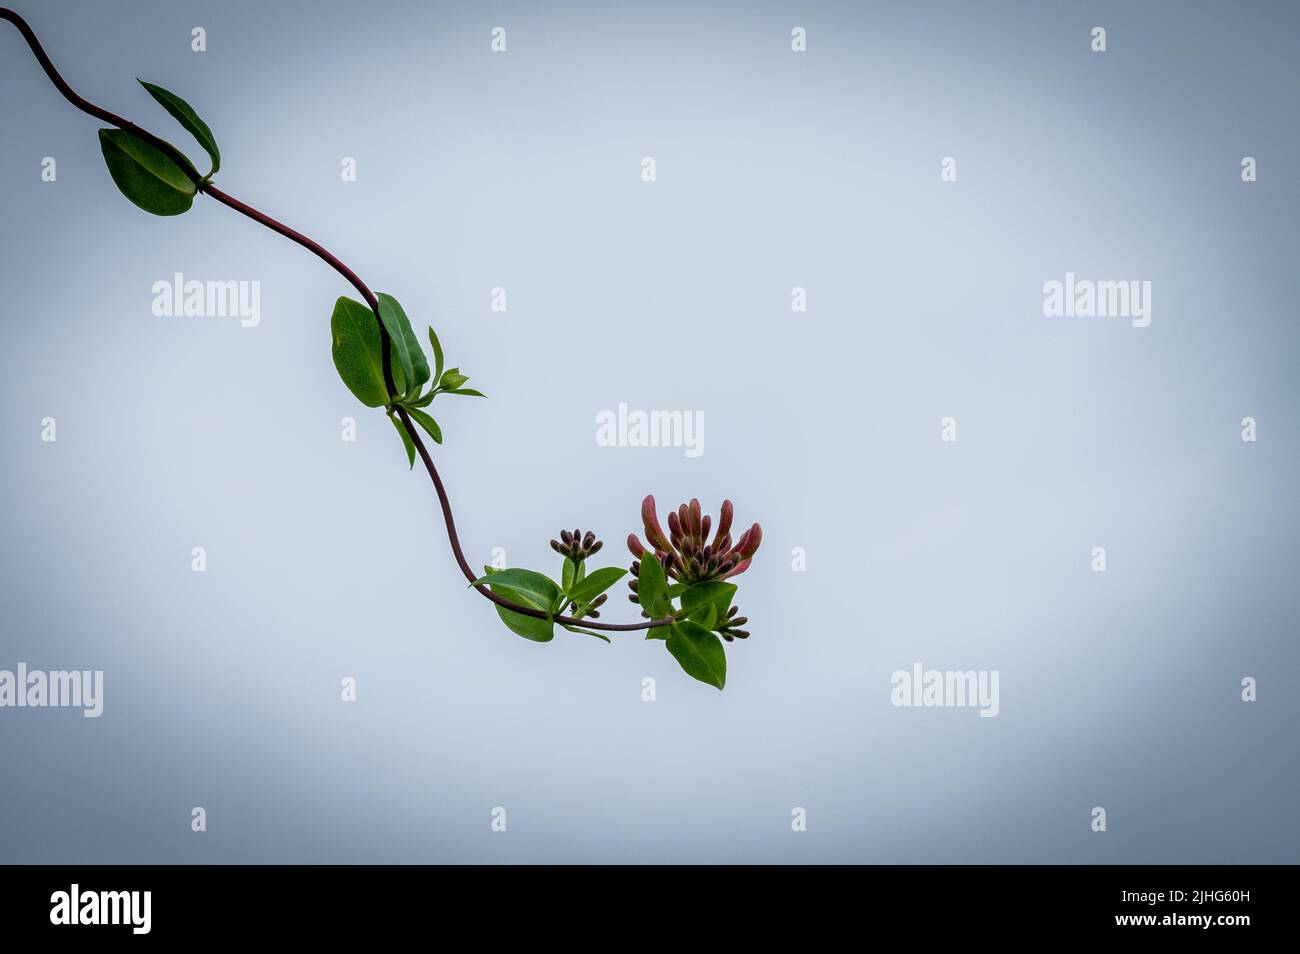 Honeysuckle flower against plain sky Stock Photo